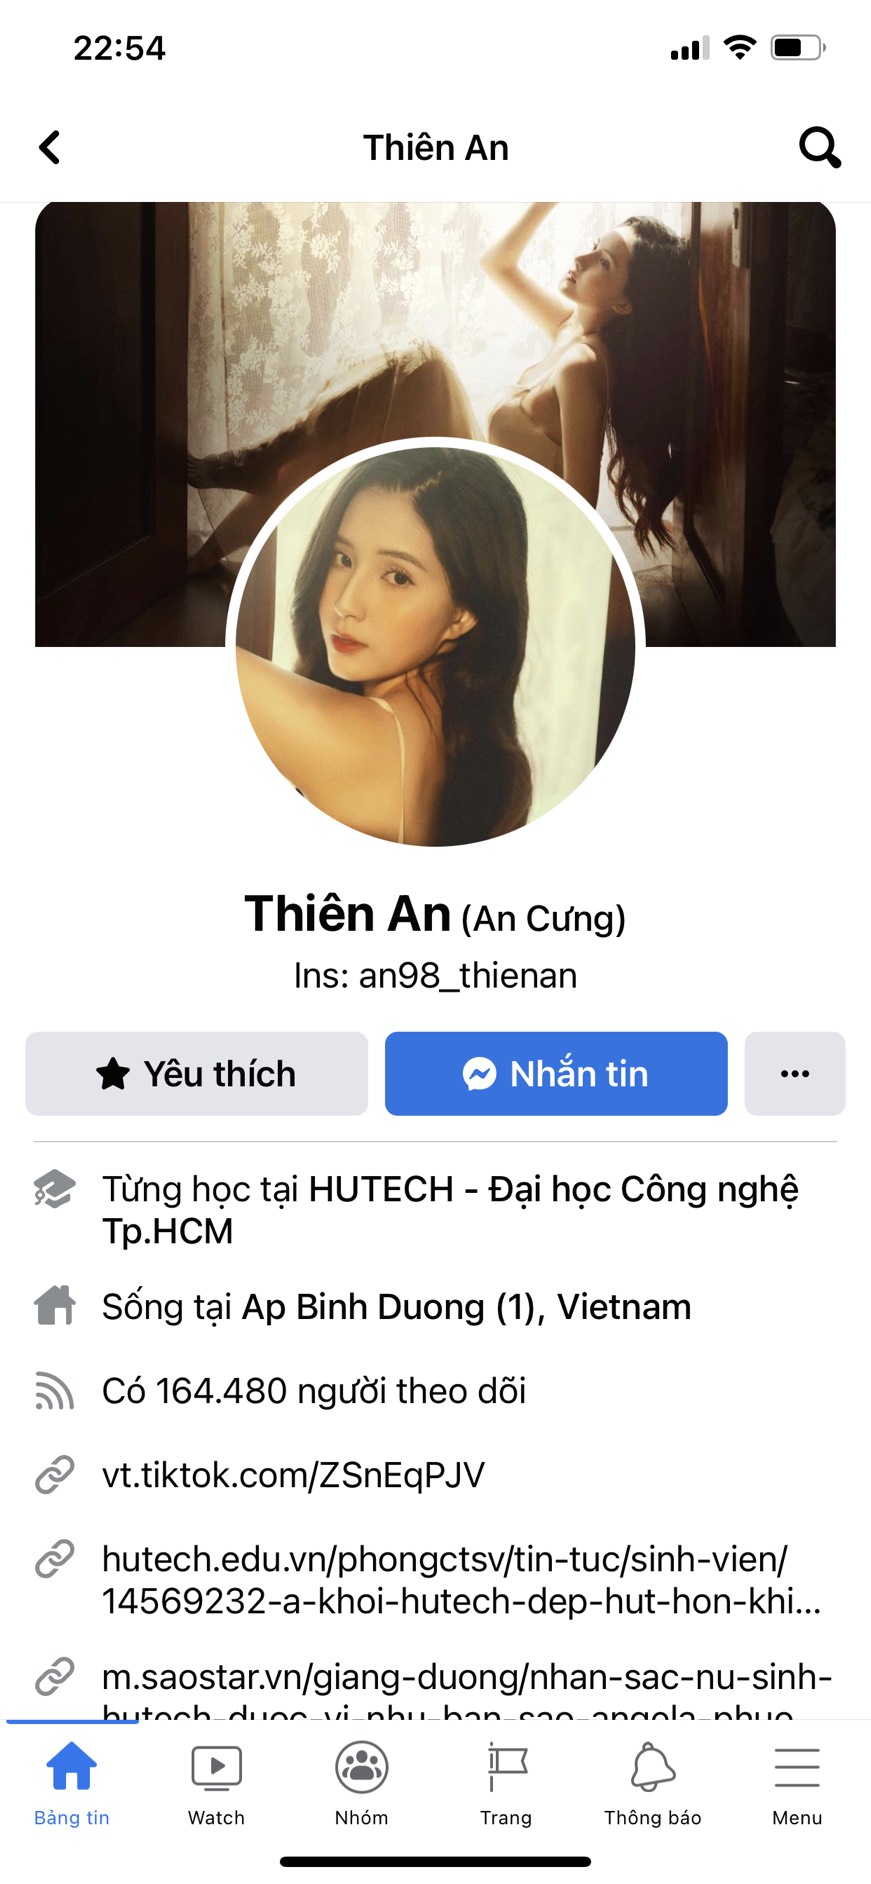 Chỉ 1 ngày sau khi nổ ra ồn ào, tài khoản Facebook của Thiên An tăng 150 nghìn lượt follow